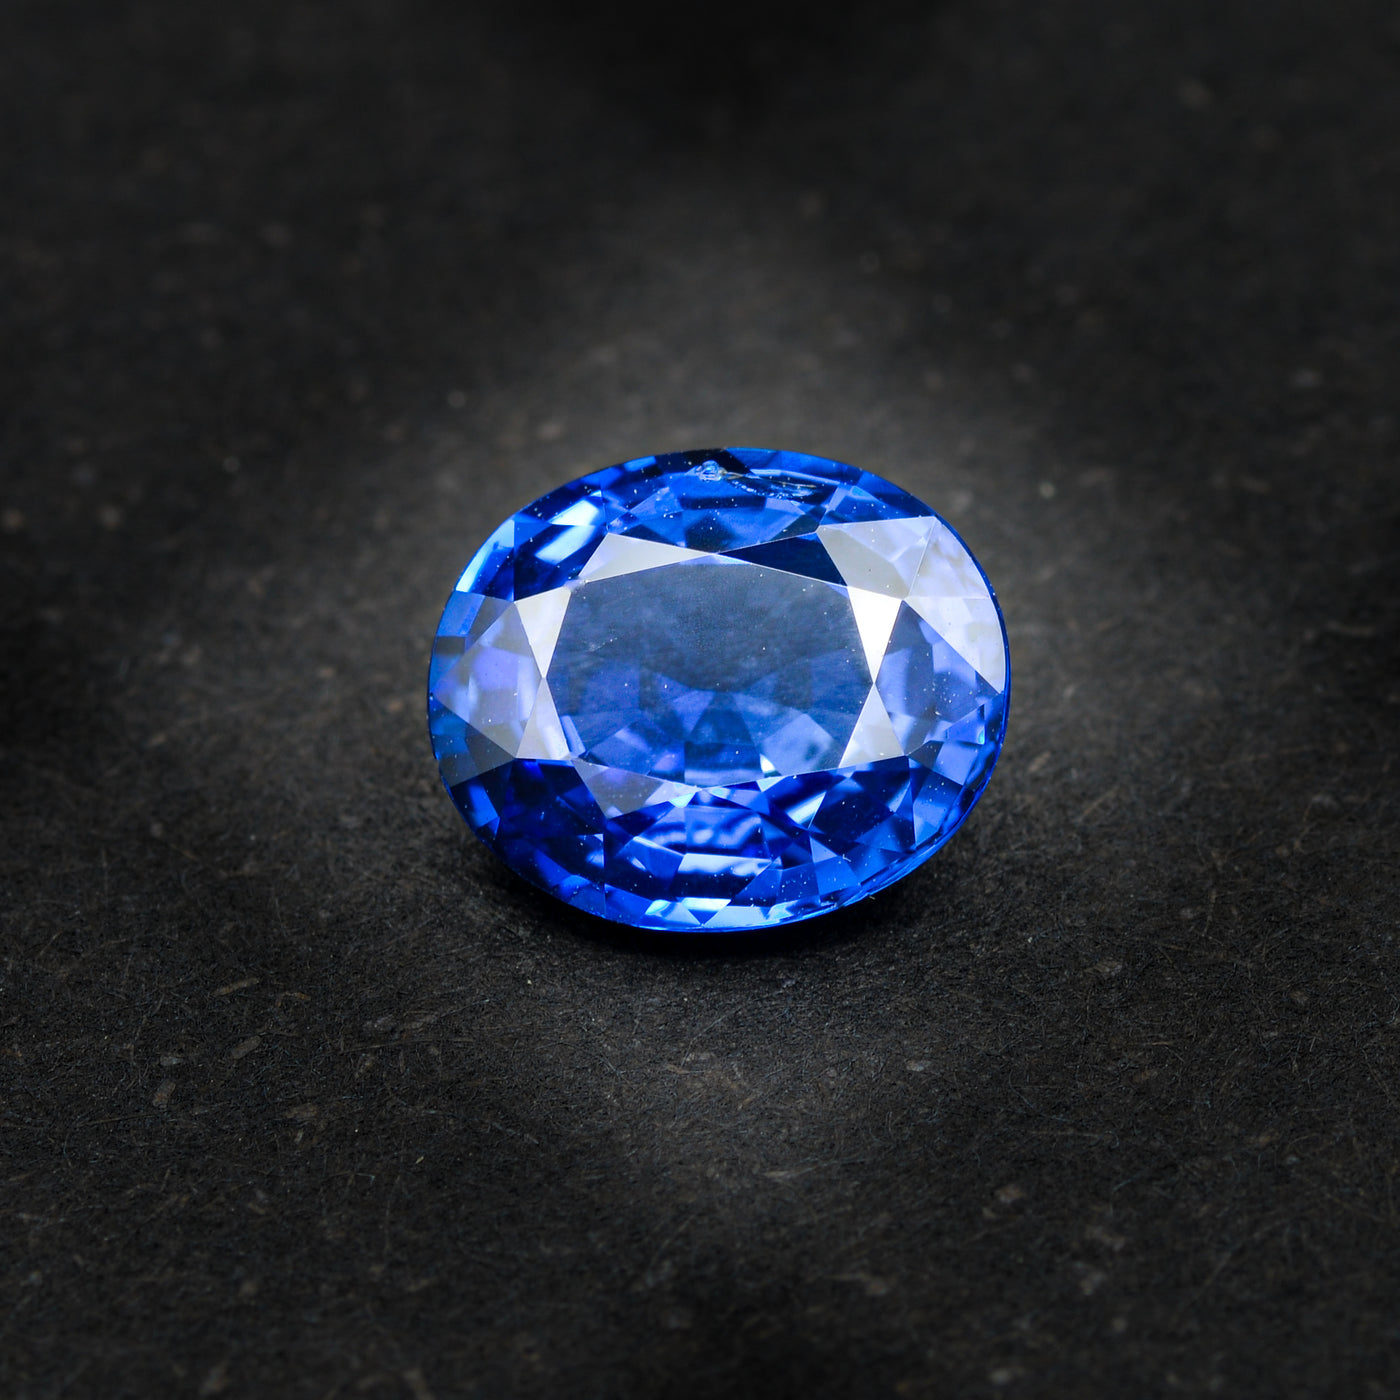 Saphir bleu 1.59 carats ovale chauffé